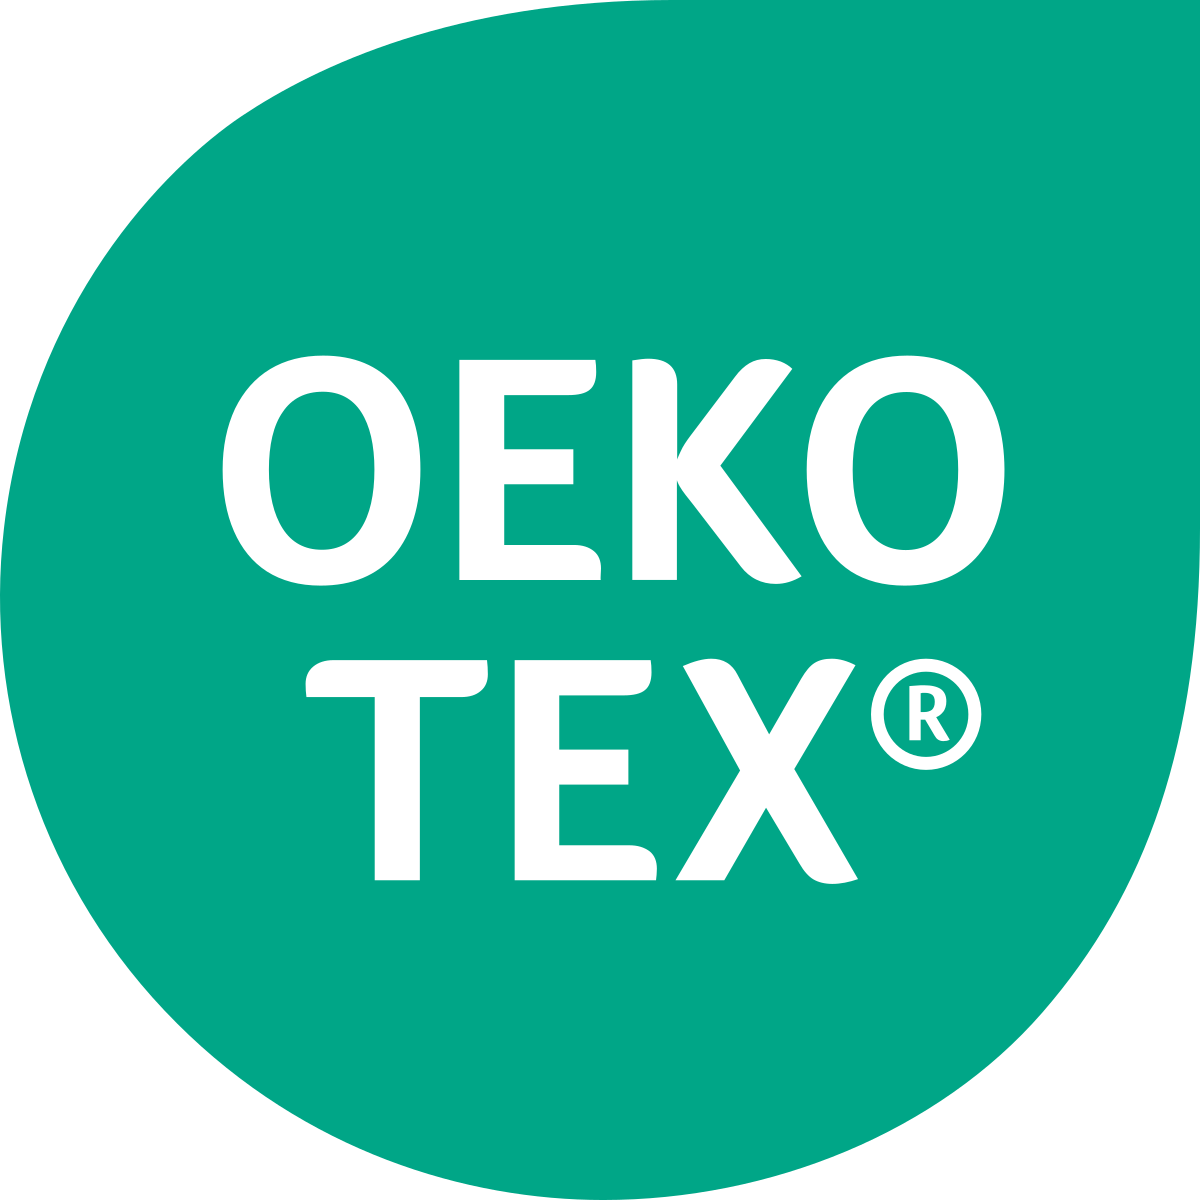 OEKO-TEX® standards 